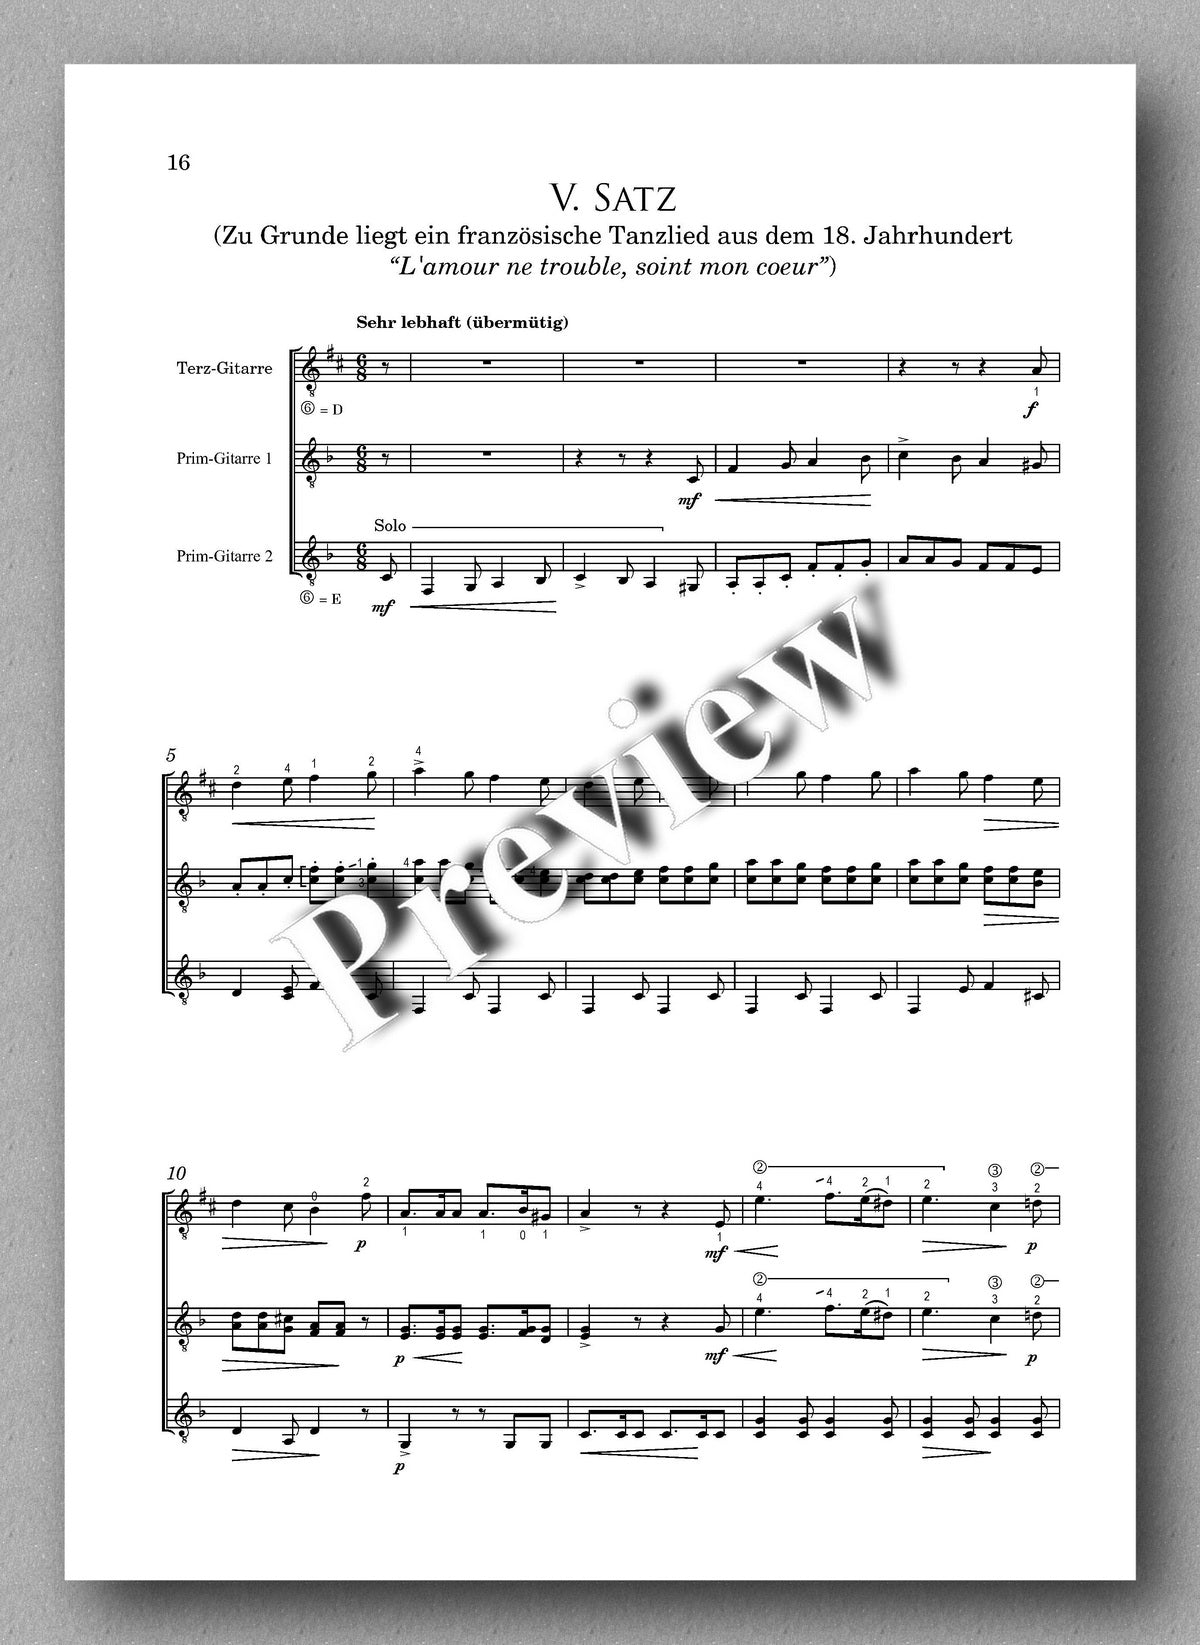 Rebay [163], Suite über altfranzösische Volkslieder -music score 3